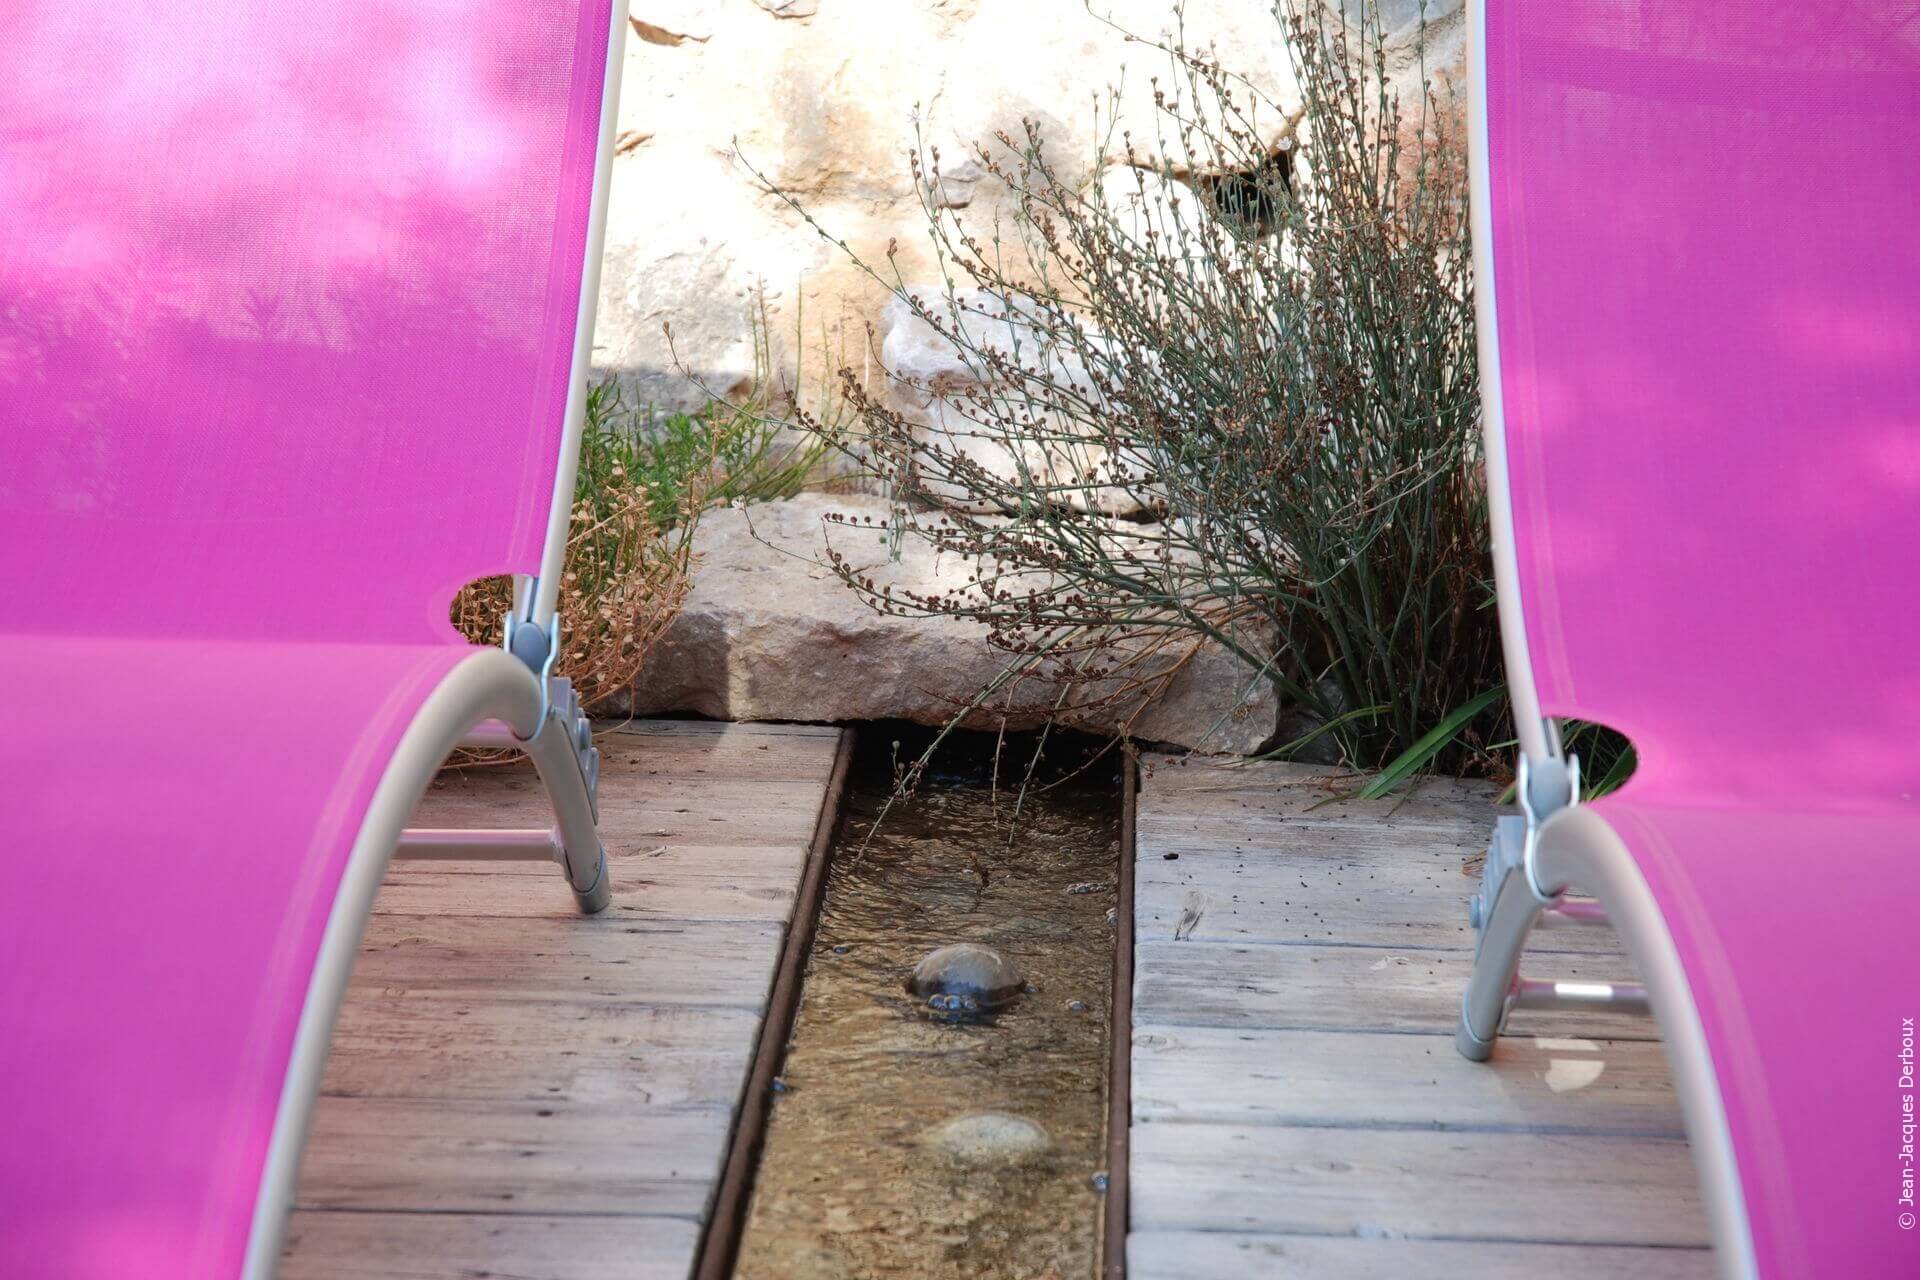 Canal en métal brut implanté dans terrasse bois, bain de soleil, sortie d’eau dans un mur.